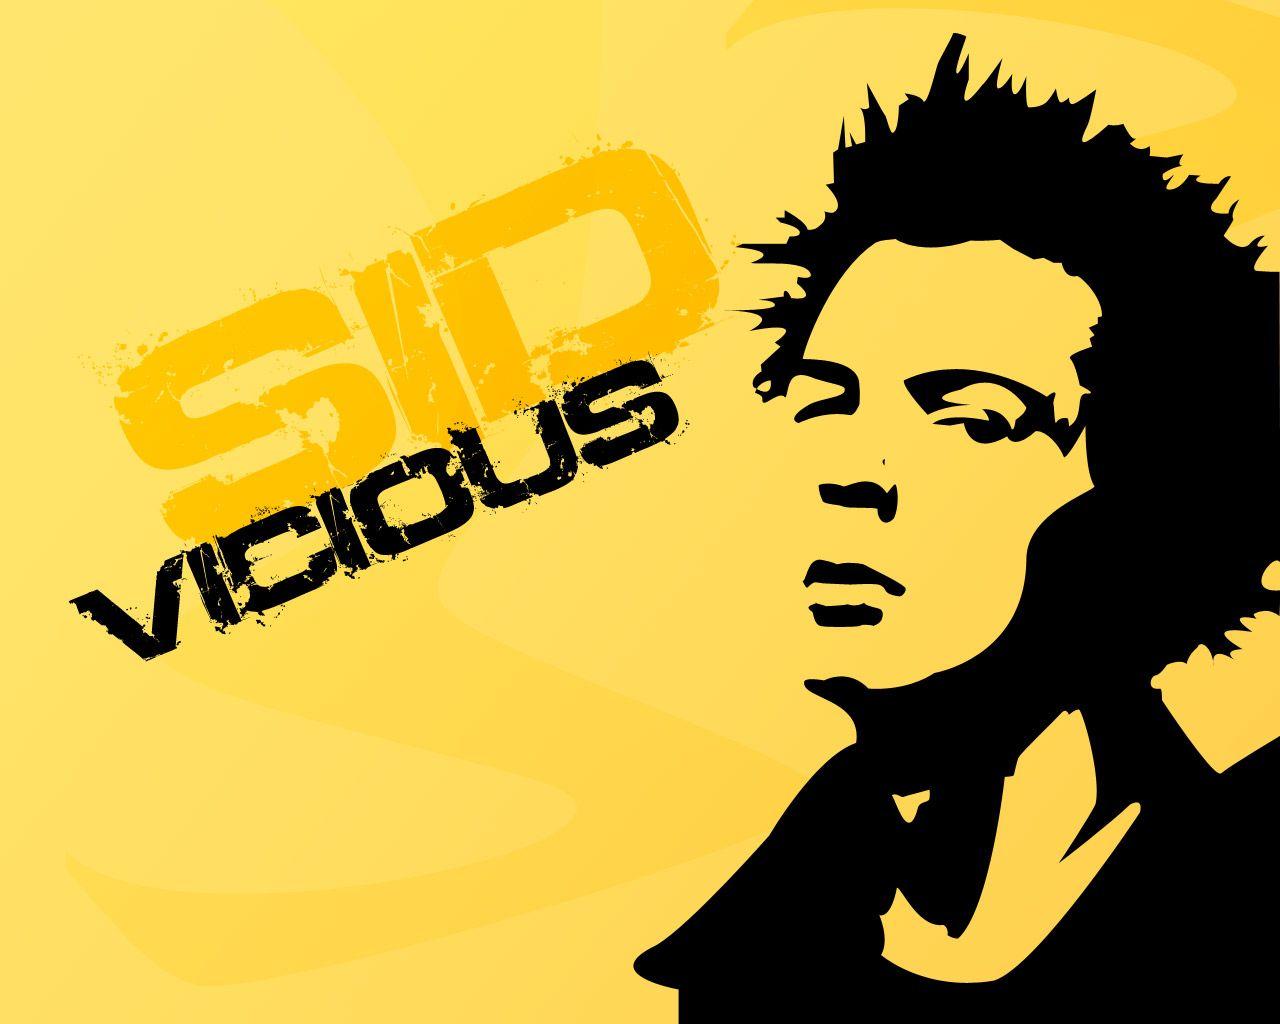 Sid Vicious By Danny Boy